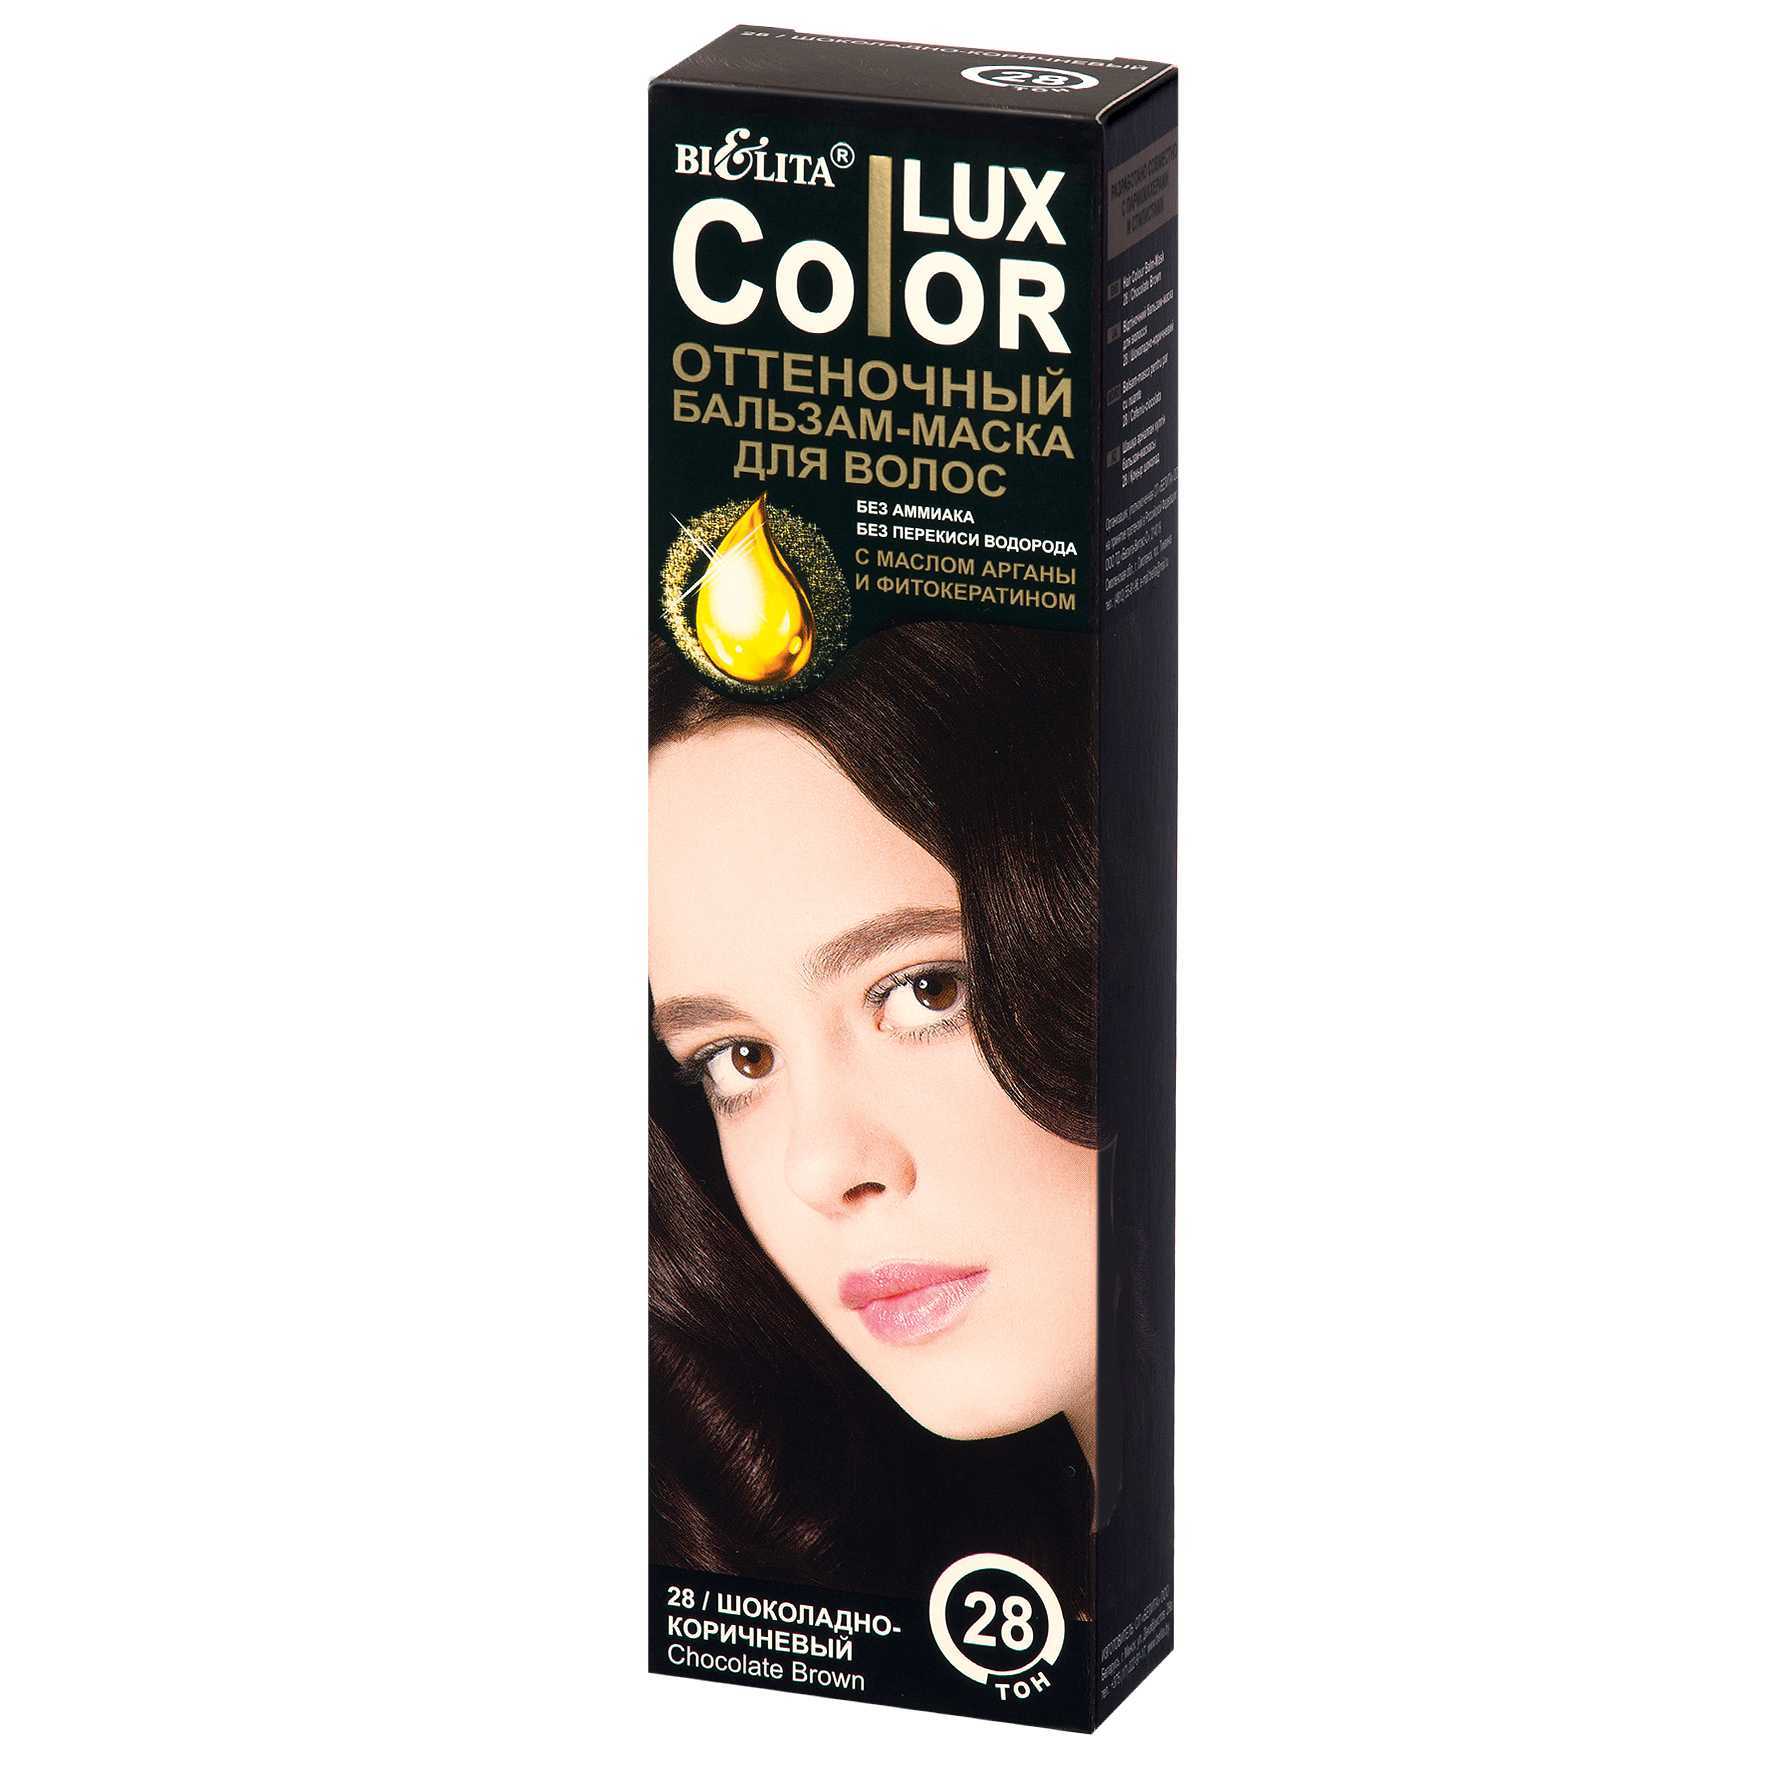 Оттеночный бальзам для волос "color lux" от bielita